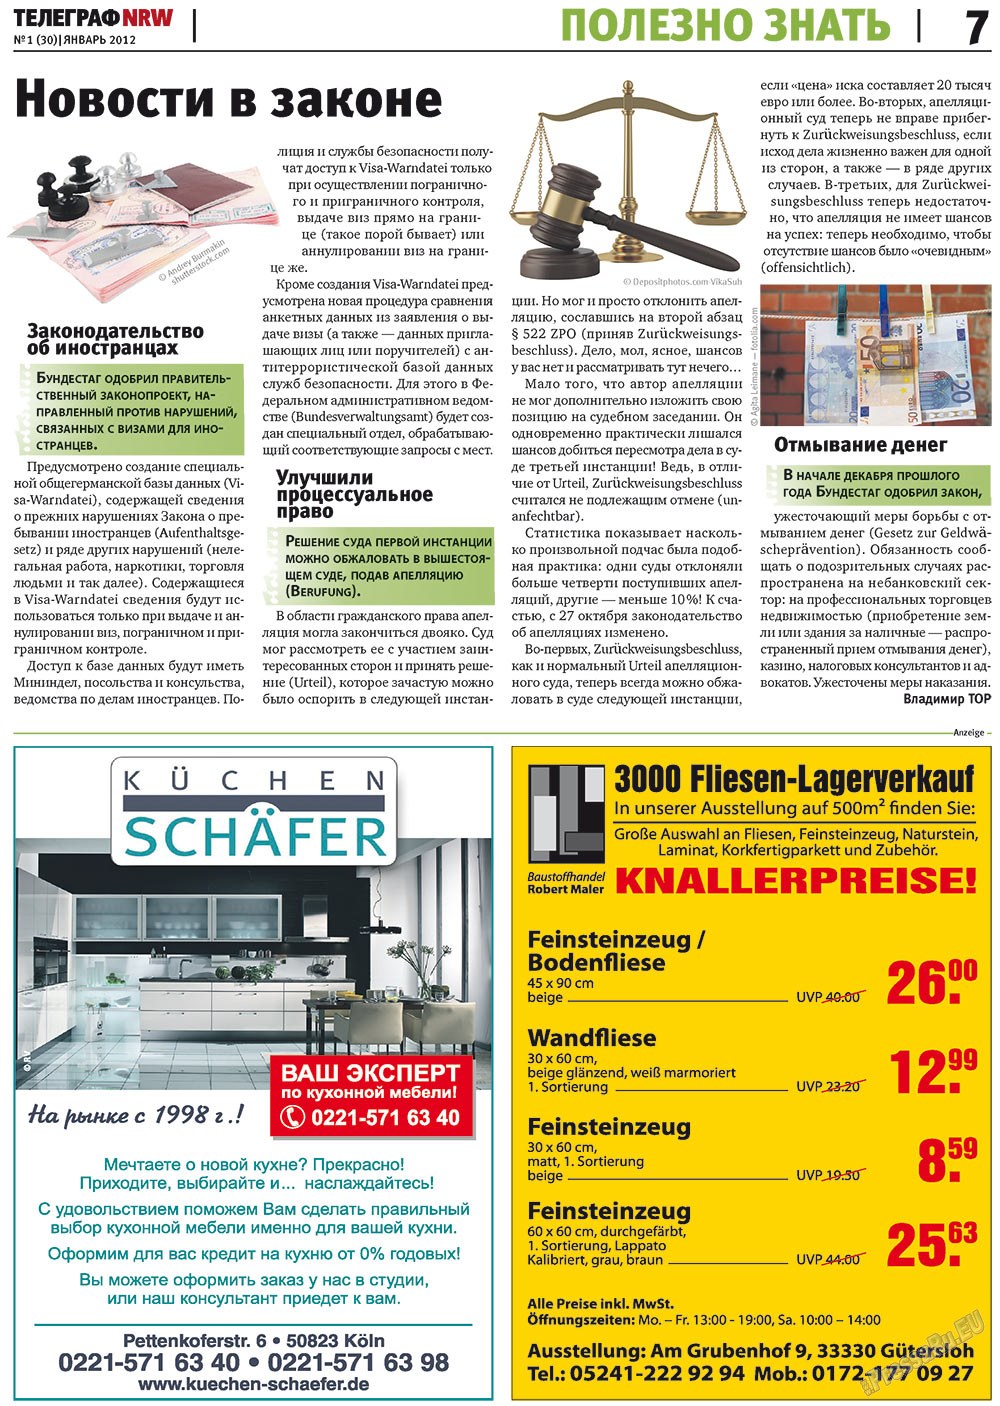 Телеграф NRW (газета). 2012 год, номер 1, стр. 7